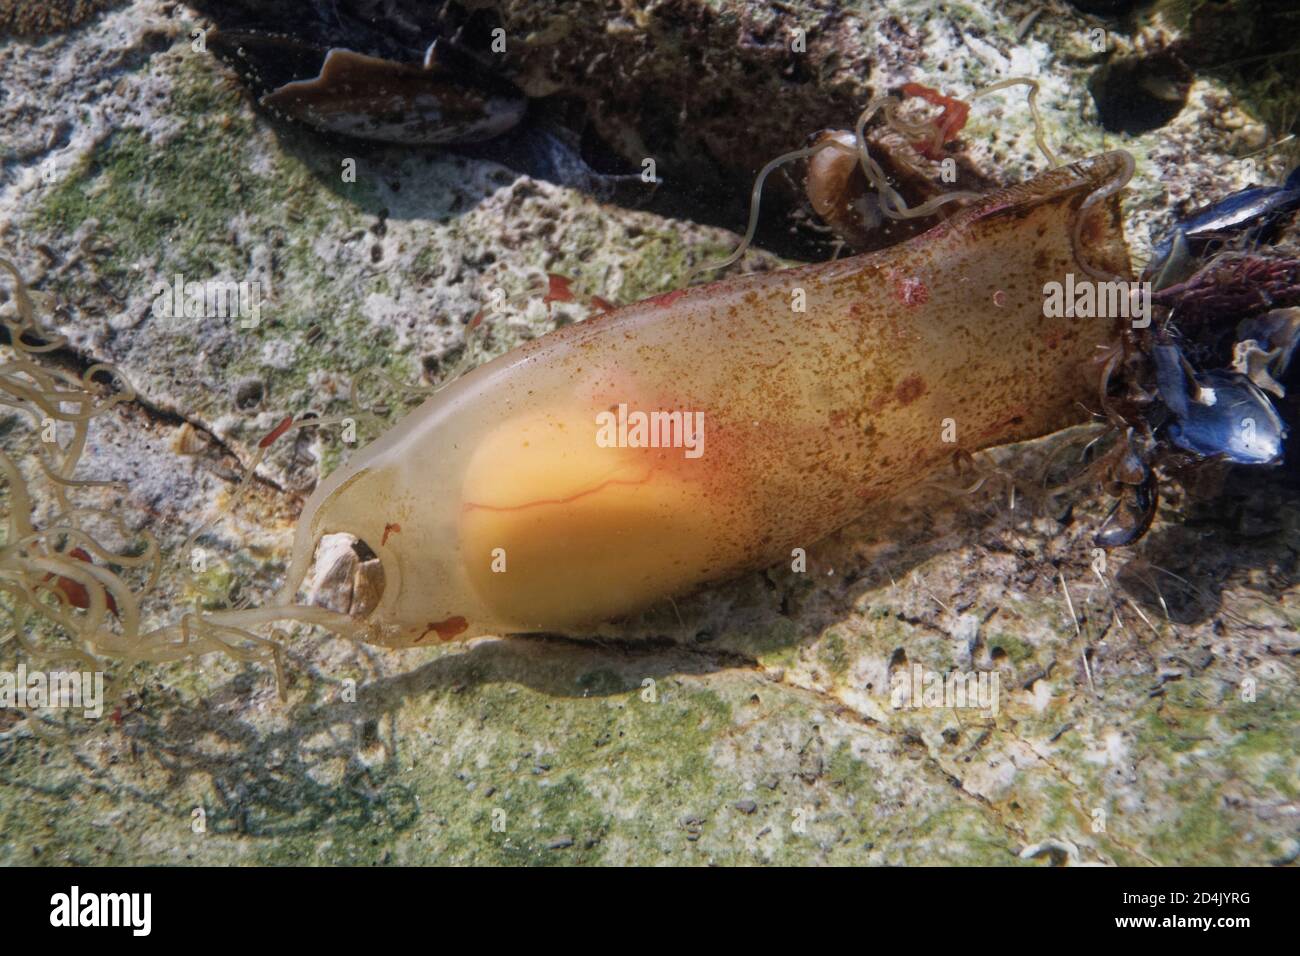 Sac à œufs Mermaid's sac de petit requin-chat tacheté / Dogfish (Scyliorhinus canicula) dans un rockpool avec le développement de jeunes poissons et le jaune visible à l'intérieur Banque D'Images